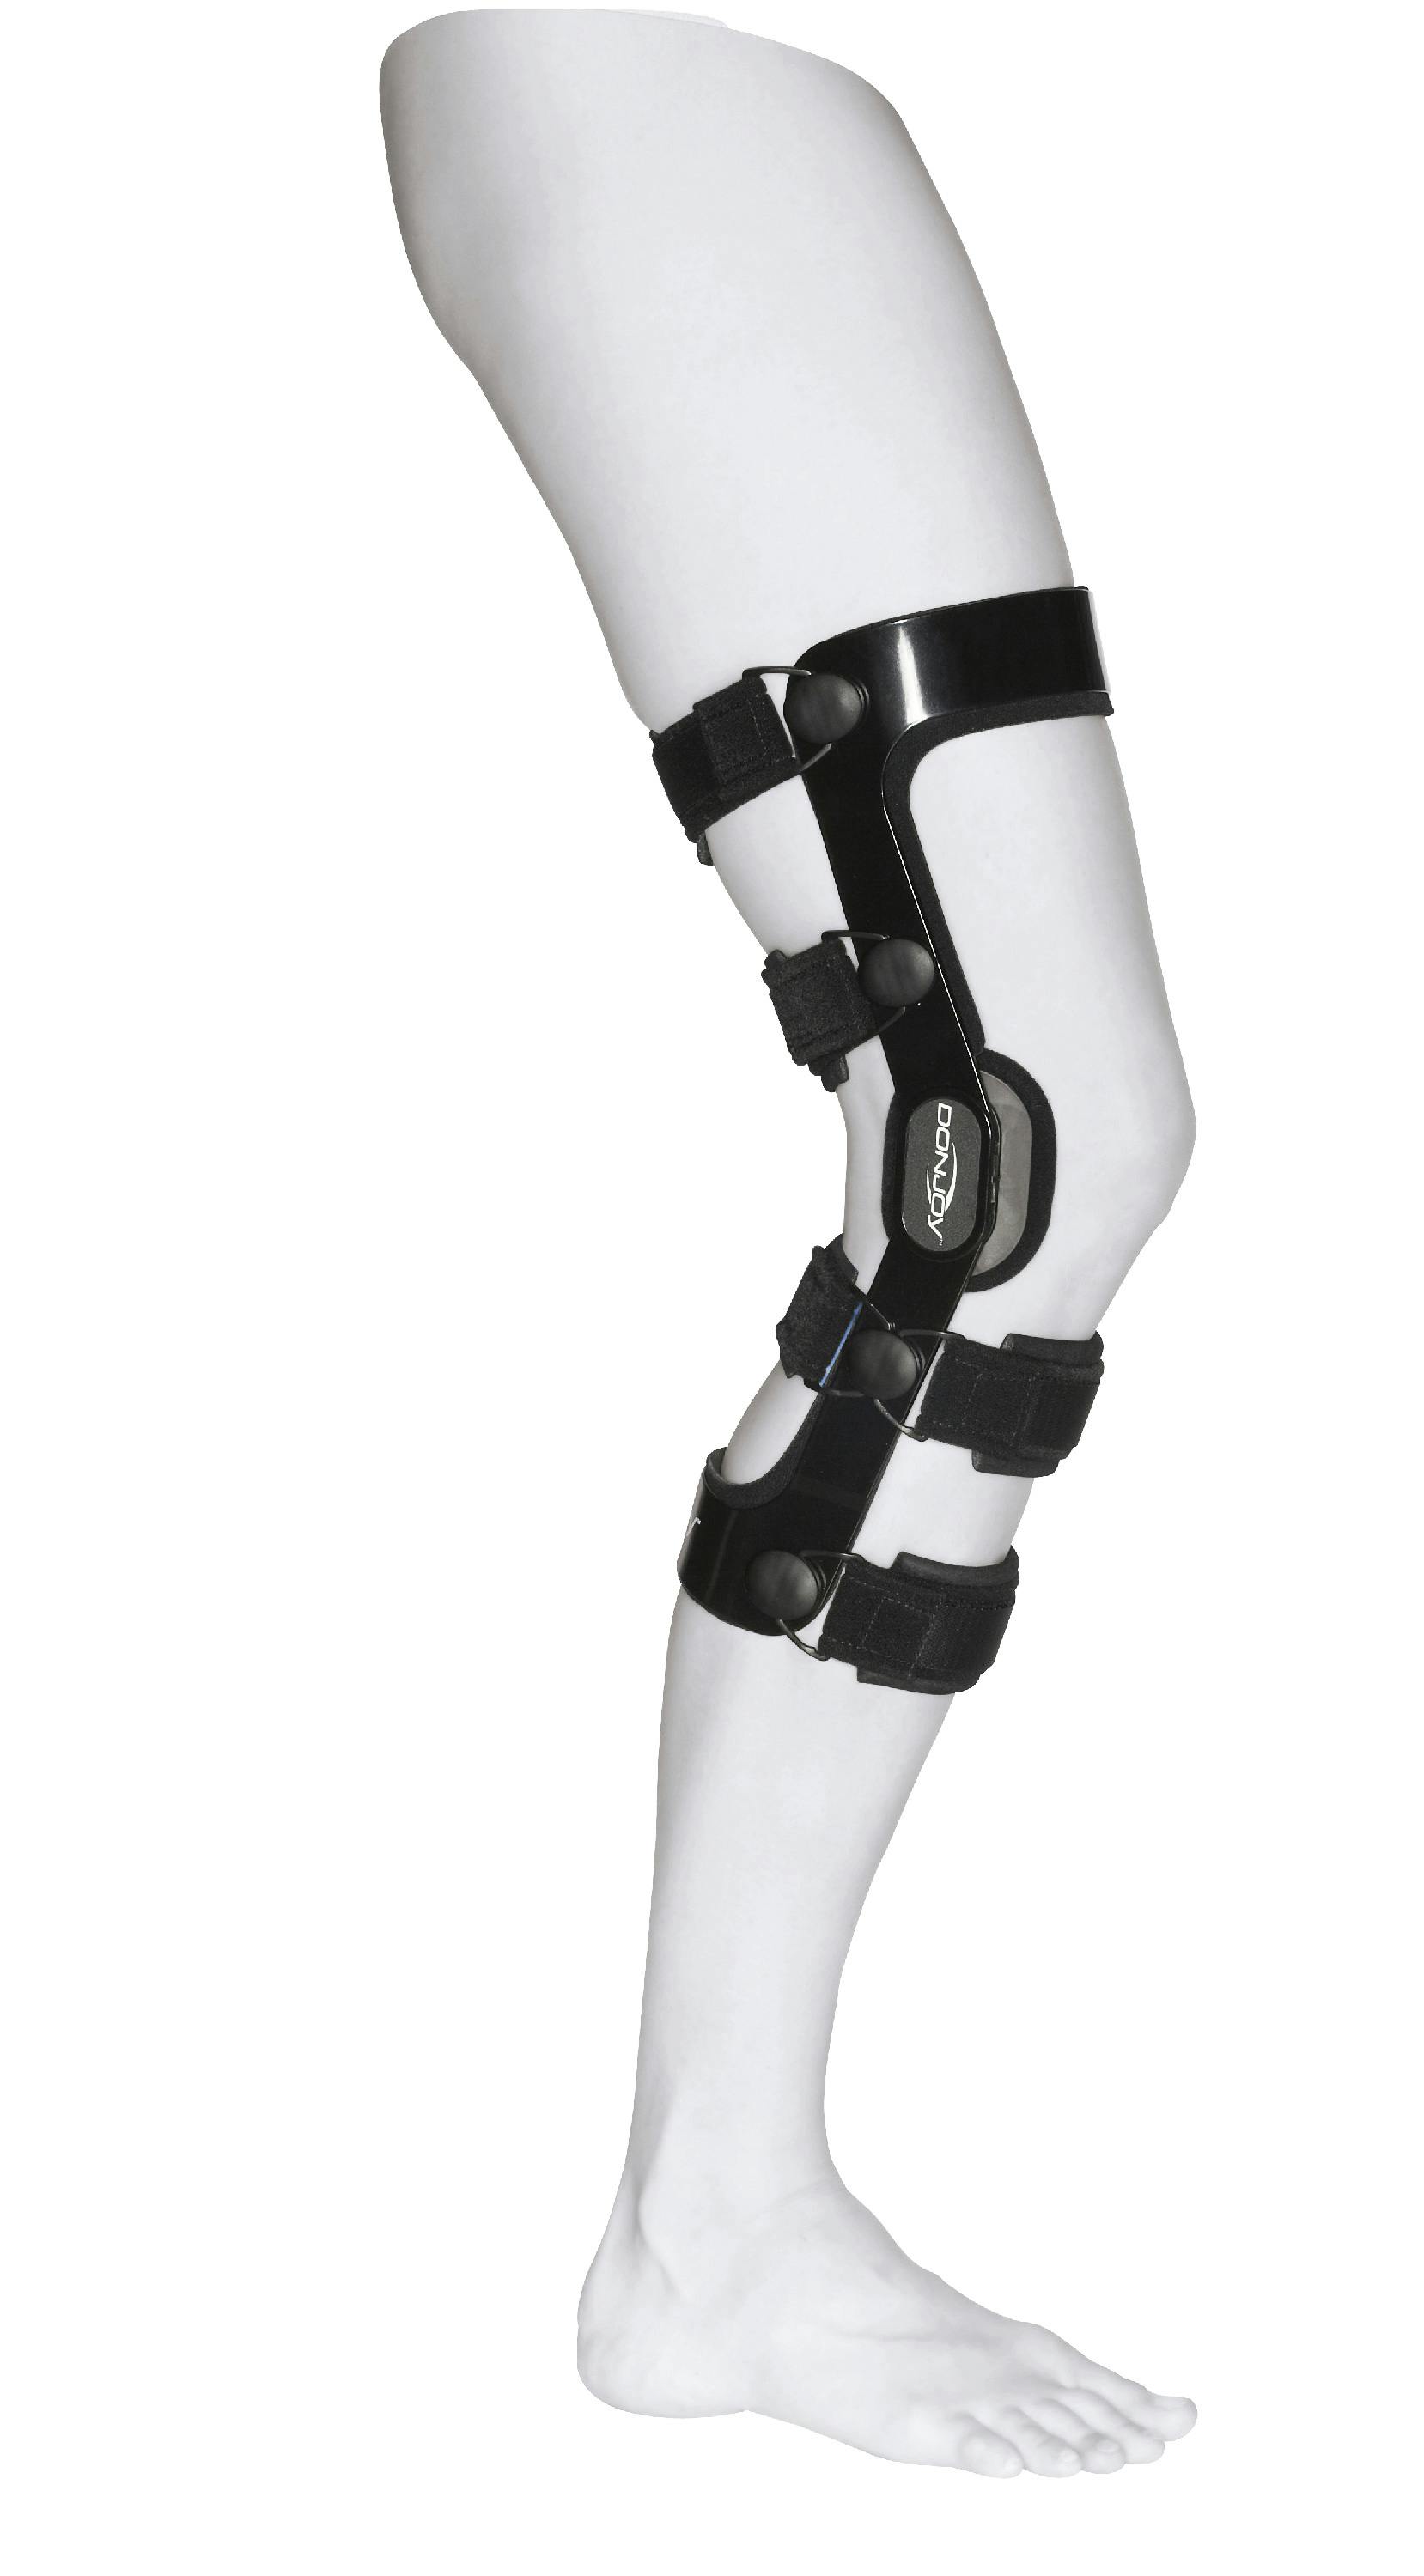 Produktbild Rahmenorthese zur Führung und Stabilisierung des Kniegelenks mit Extensions-/Flexionsbegrenzung